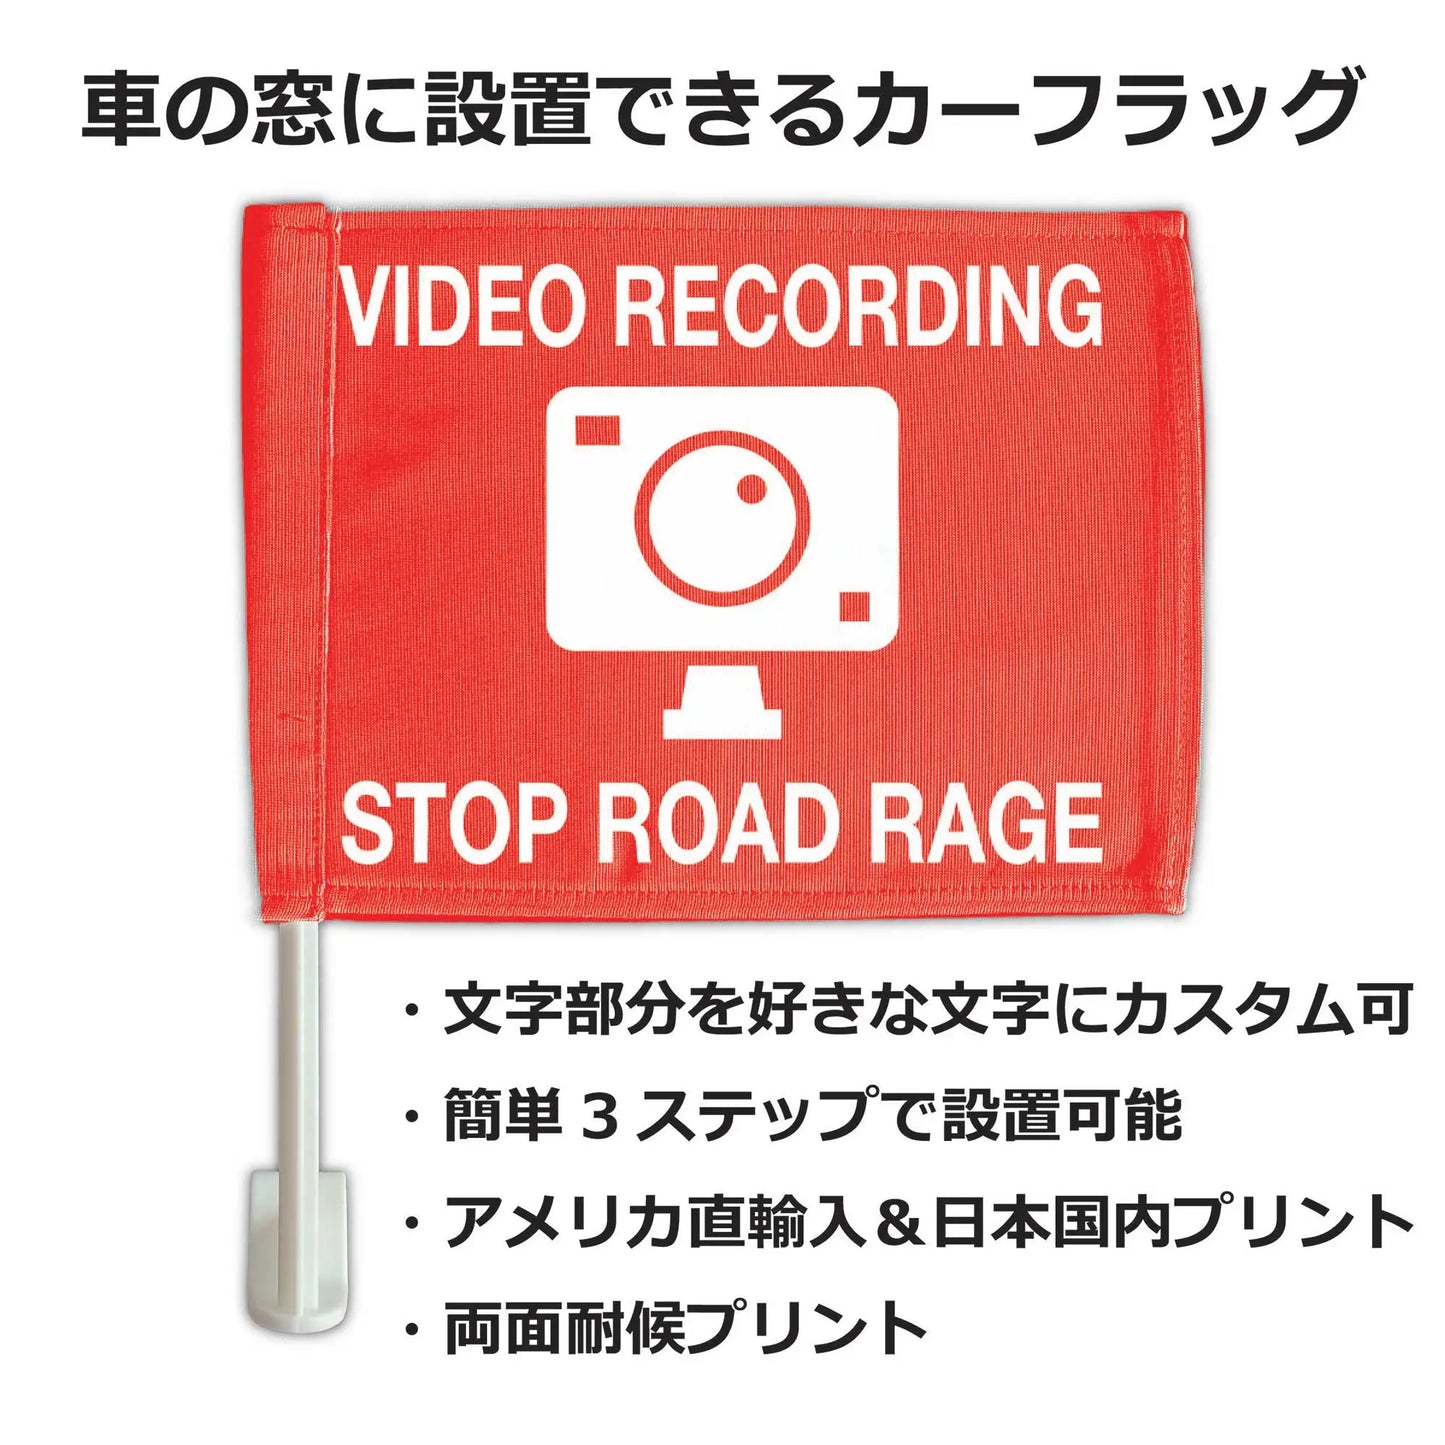 【カーフラッグ】RECORDING/録画中/自動車用オリジナルフラッグ・旗 PL8HERO